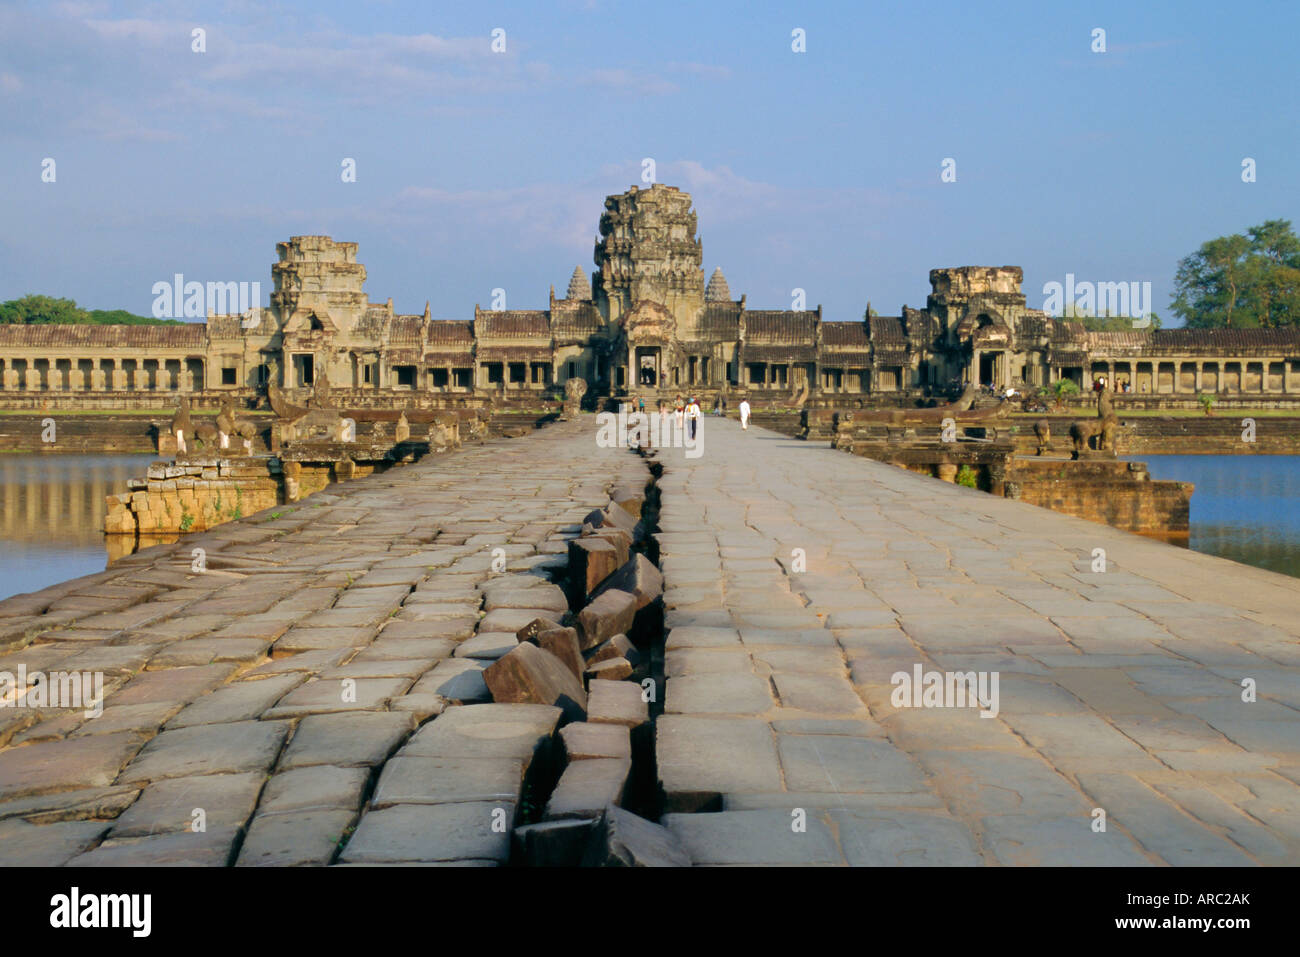 Chaussée de pierre menant au temple d'Angkor Wat, Angkor, Siem Reap, Cambodge Banque D'Images